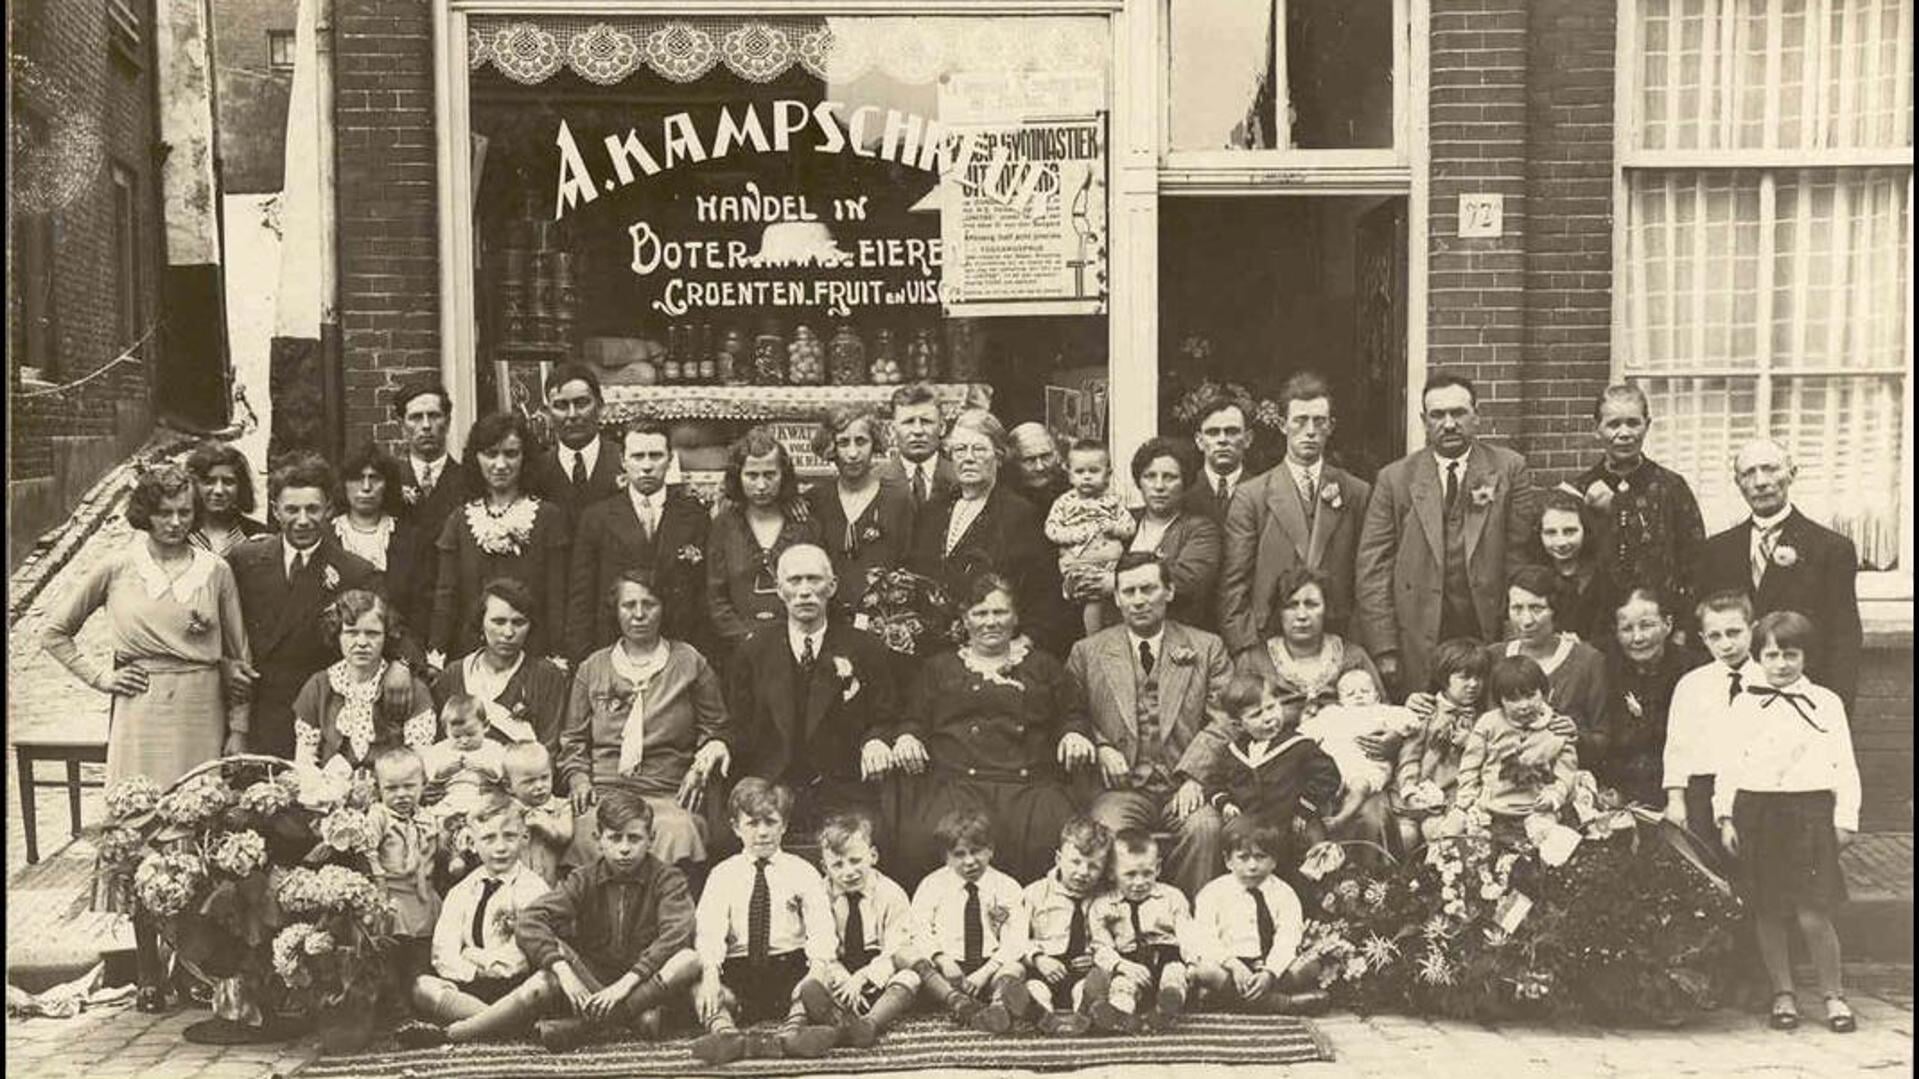 De familie Kampschreur, oprichters van Holland Food Service.